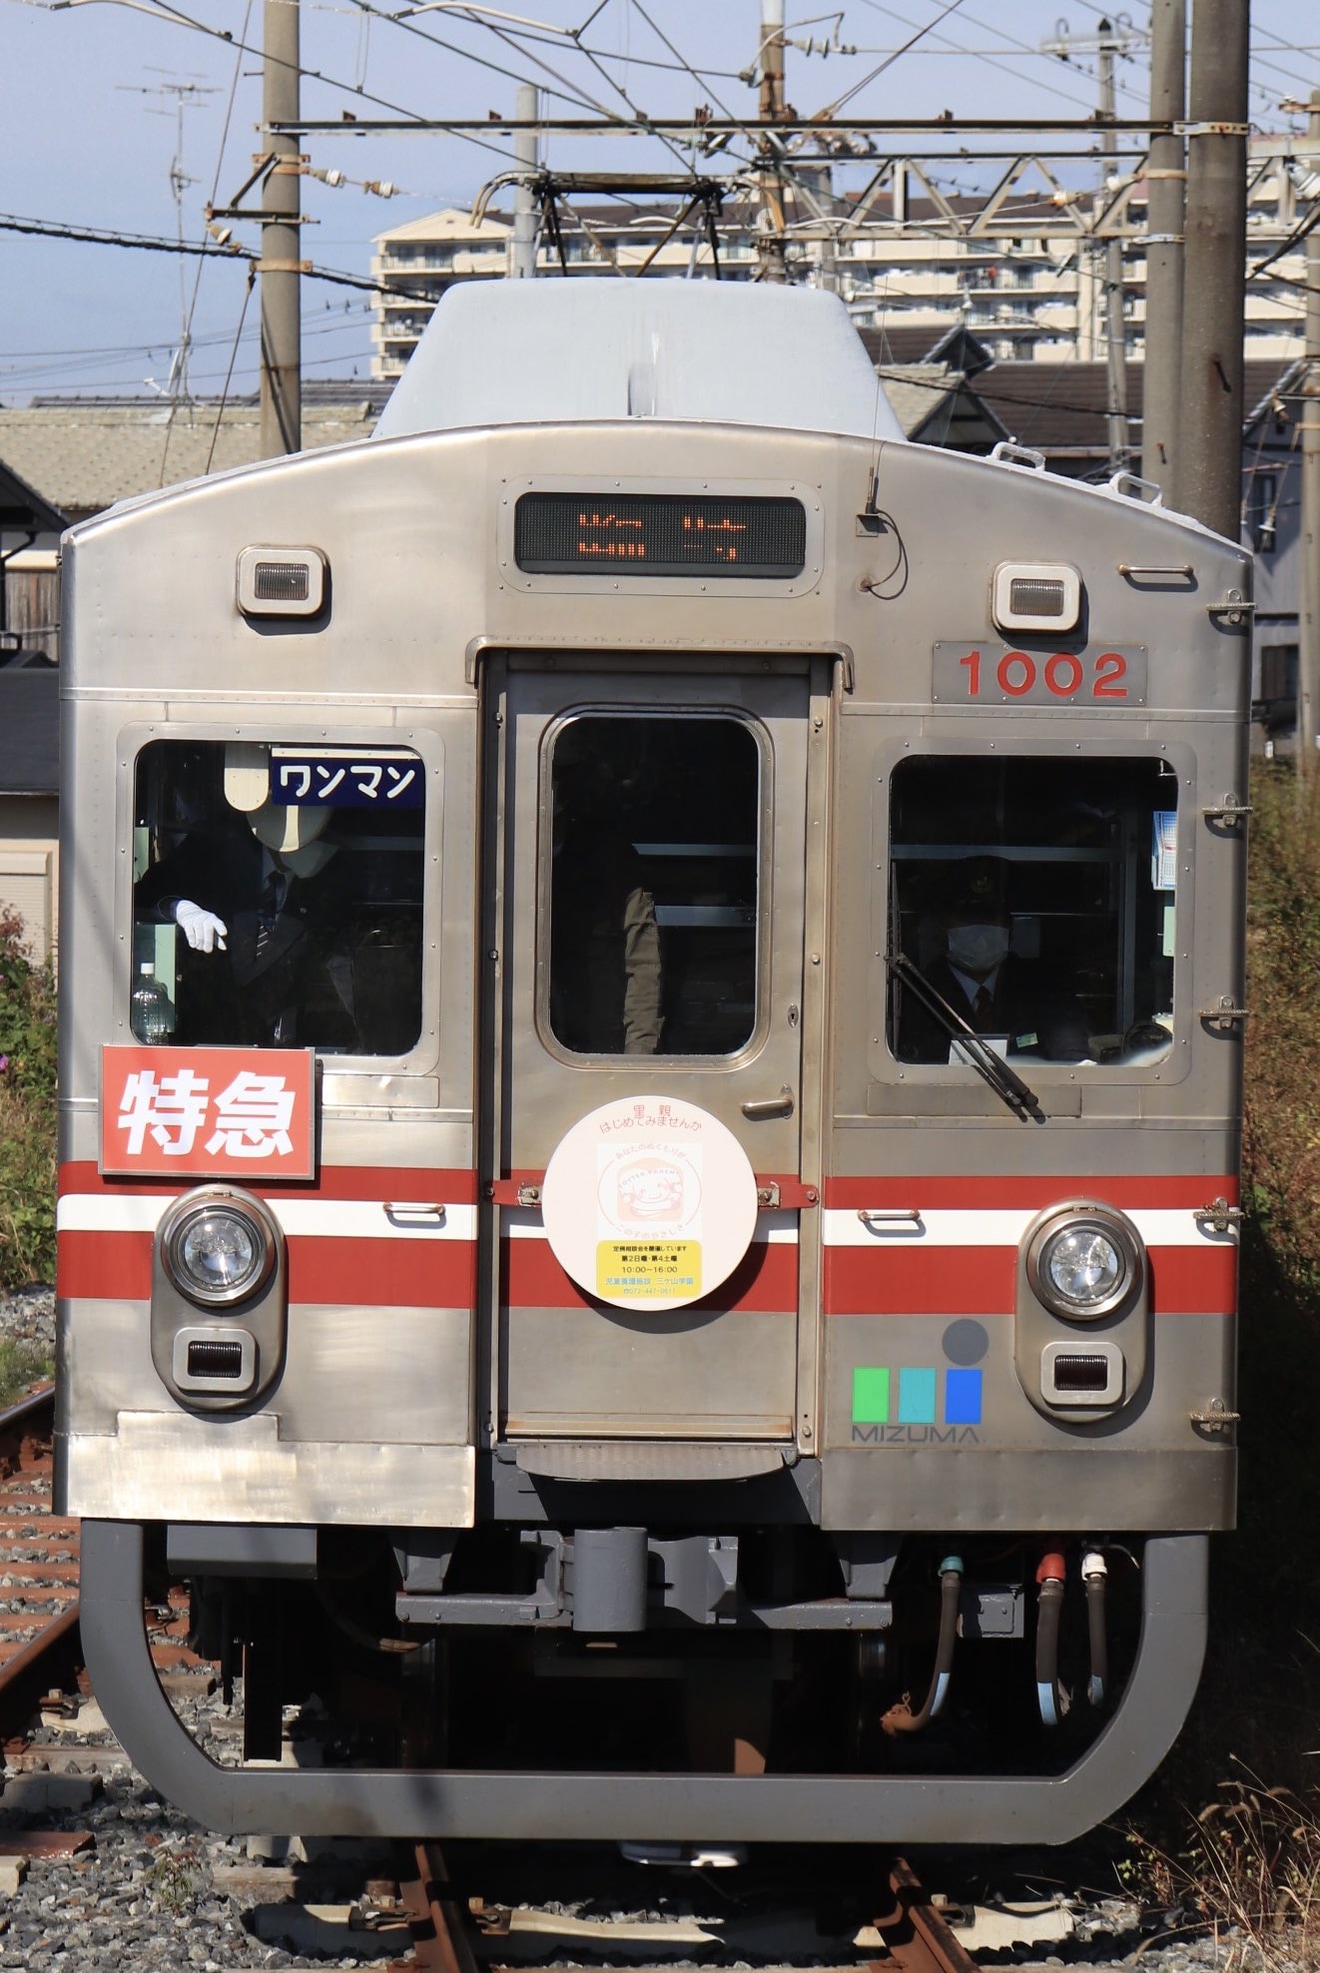 【水間】「近畿ローカル鉄道まつり」開催で「西園寺特急」を臨時運行の拡大写真